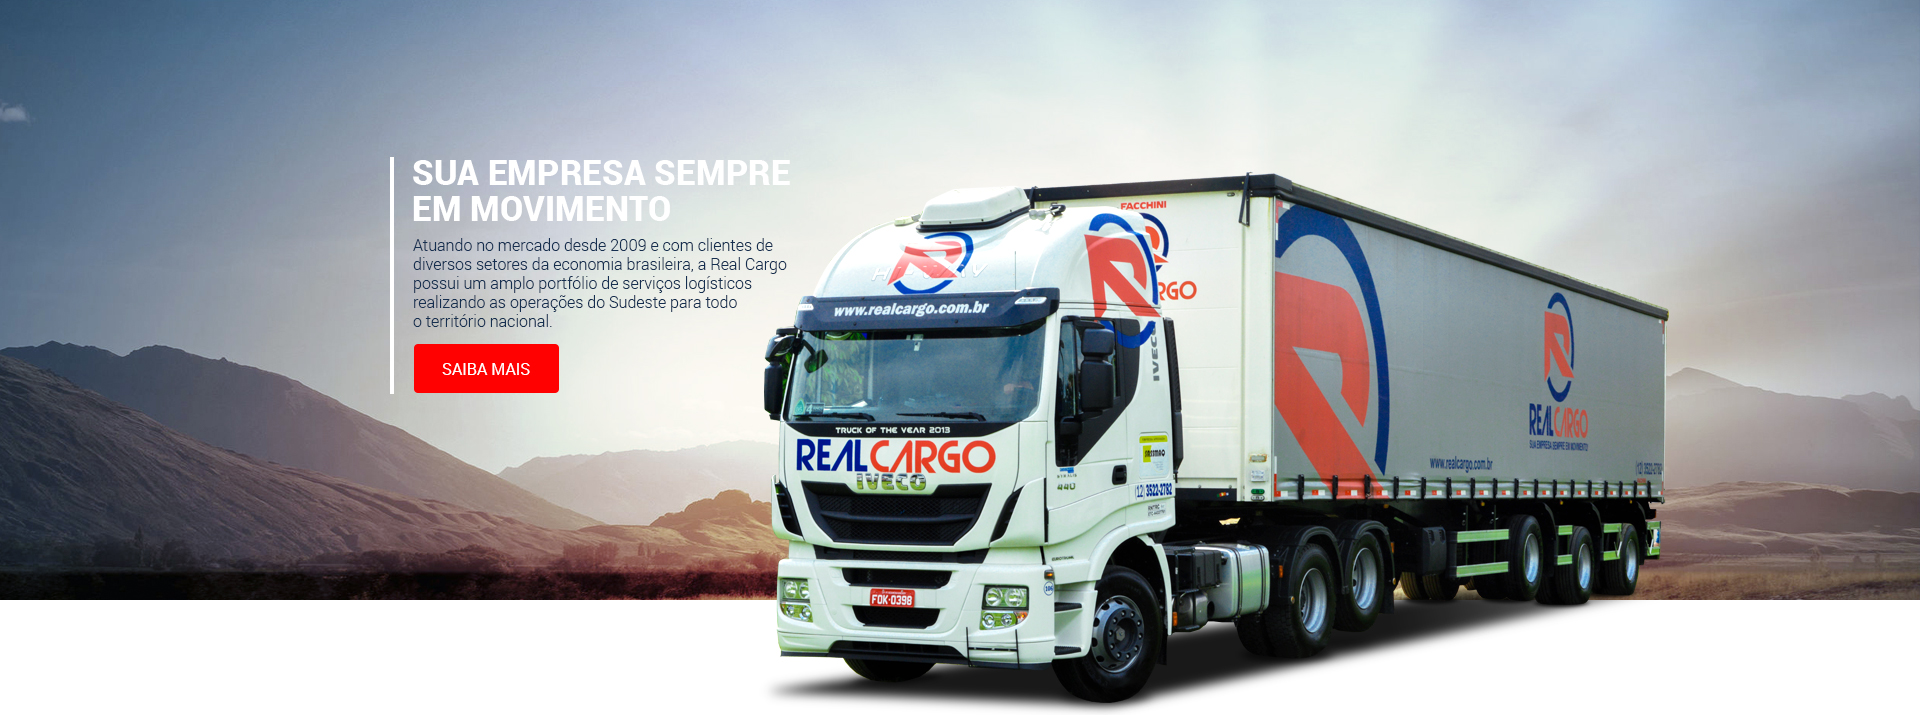 Real Cargo, sua empresa sempre em movimento